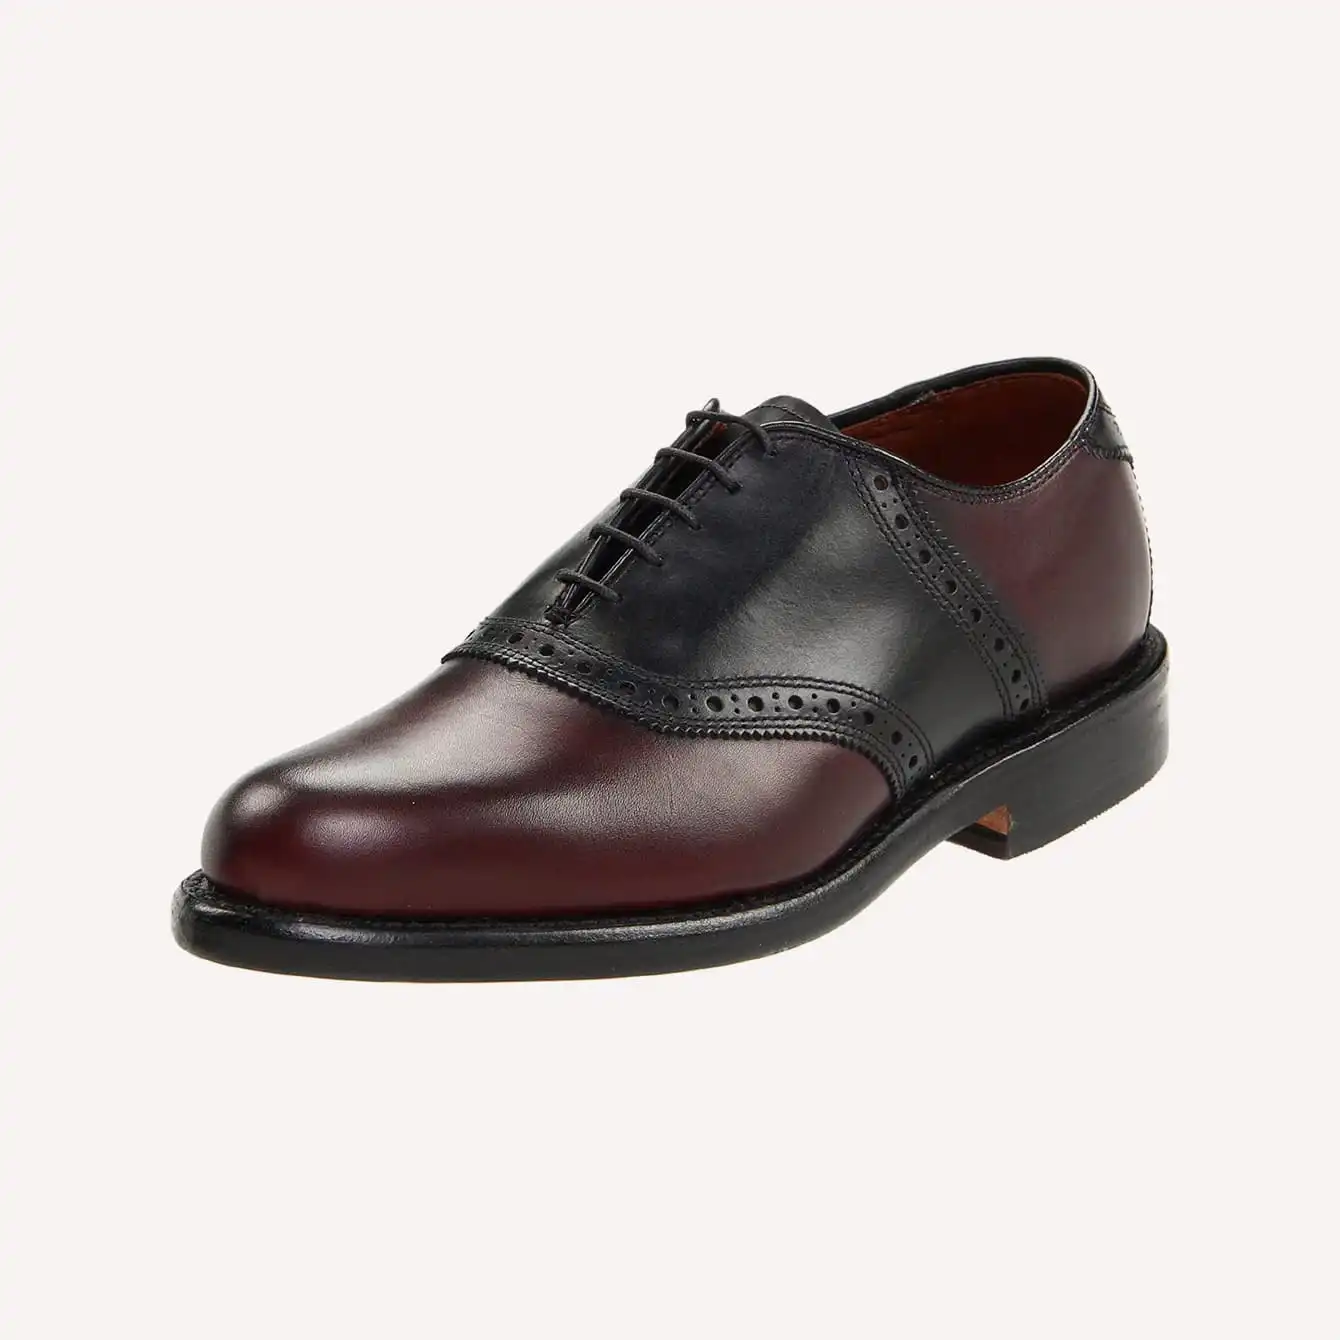 Allen Edmonds - Shelton Saddle Oxford Shoes